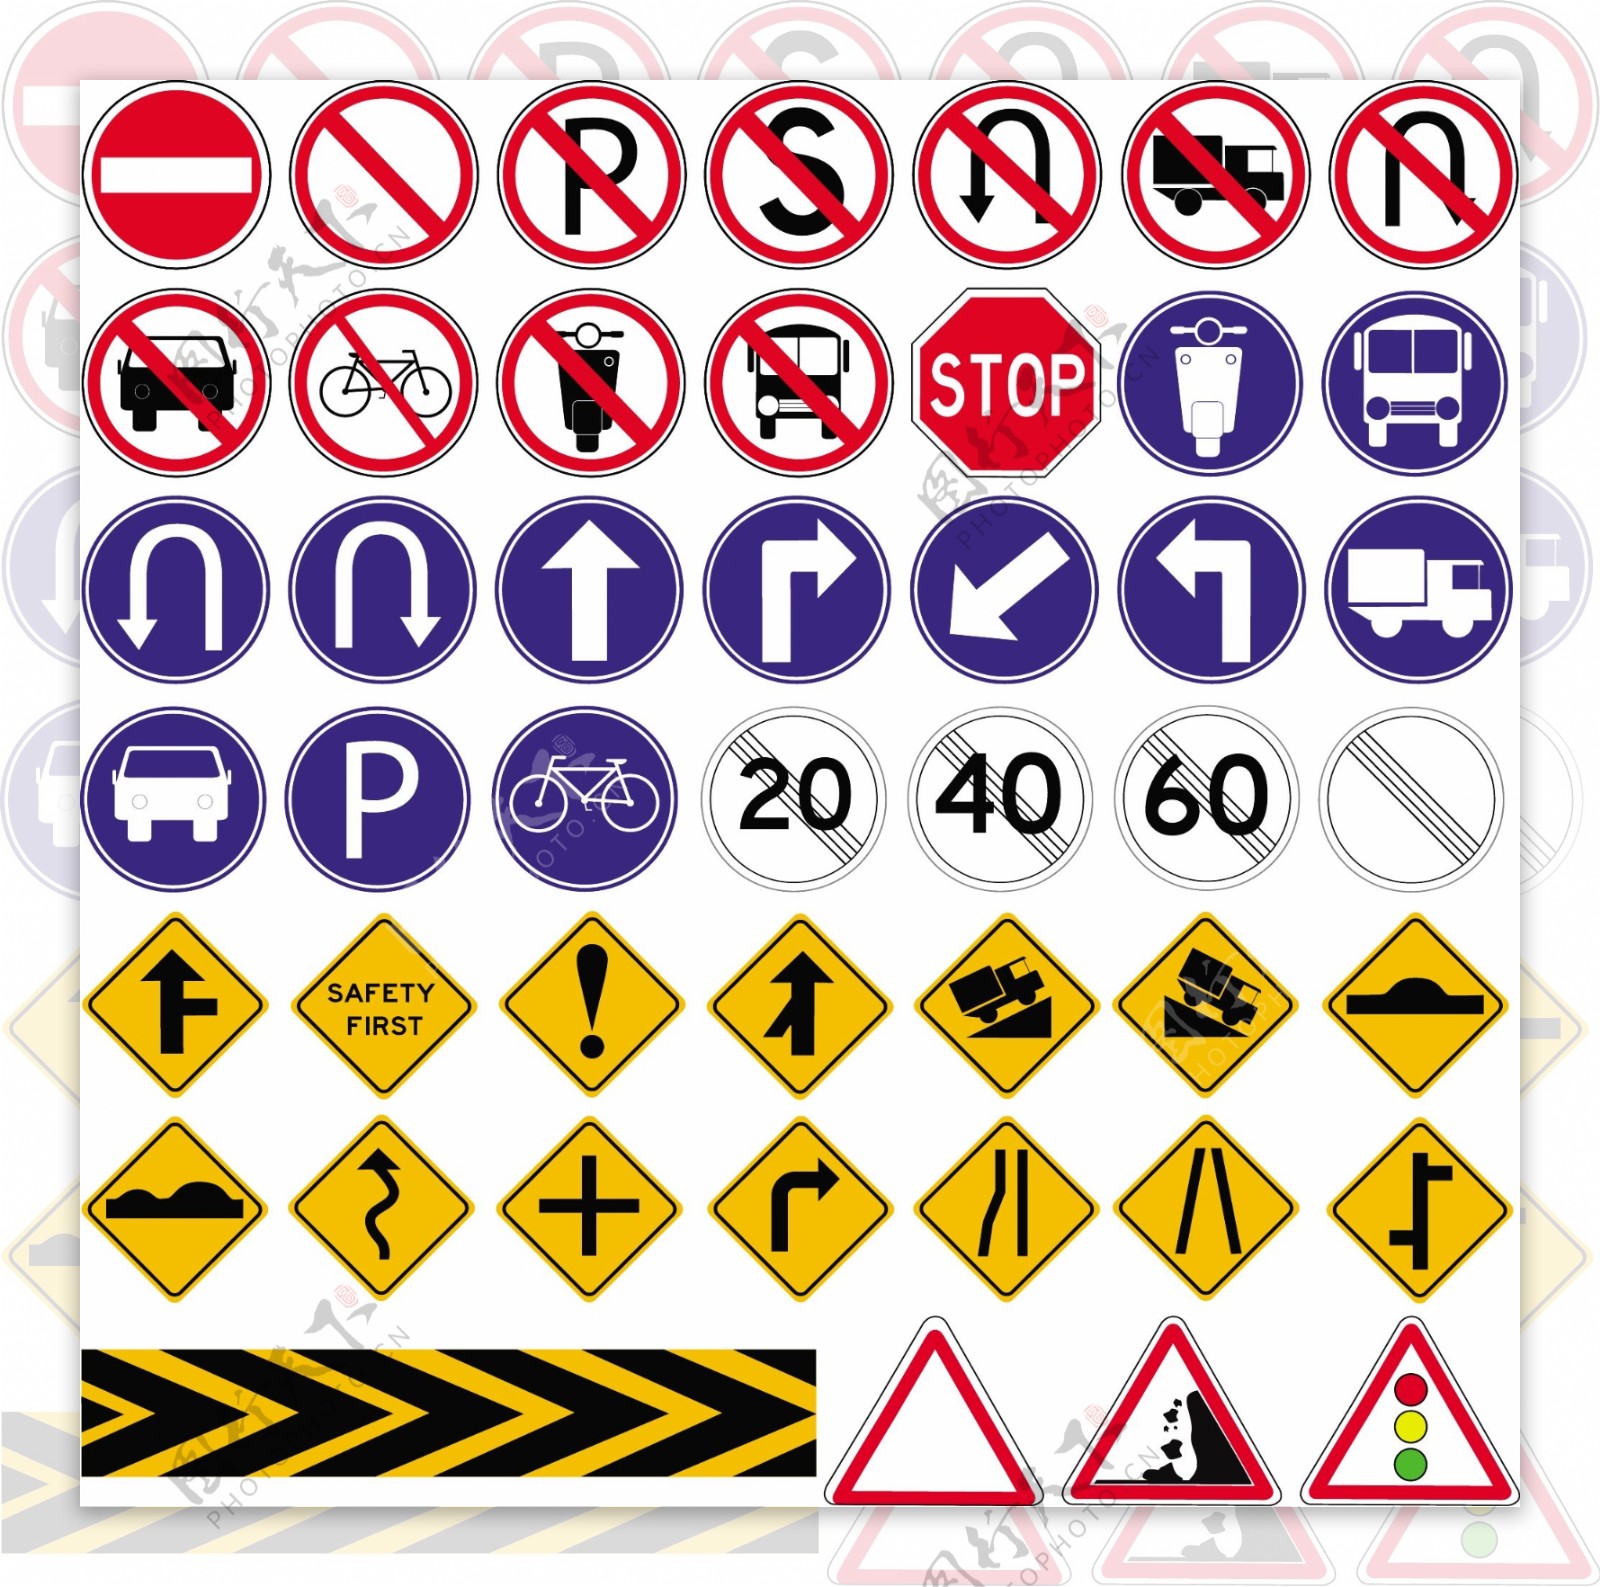 交通路况安全指示牌素材免费下载 - 觅知网